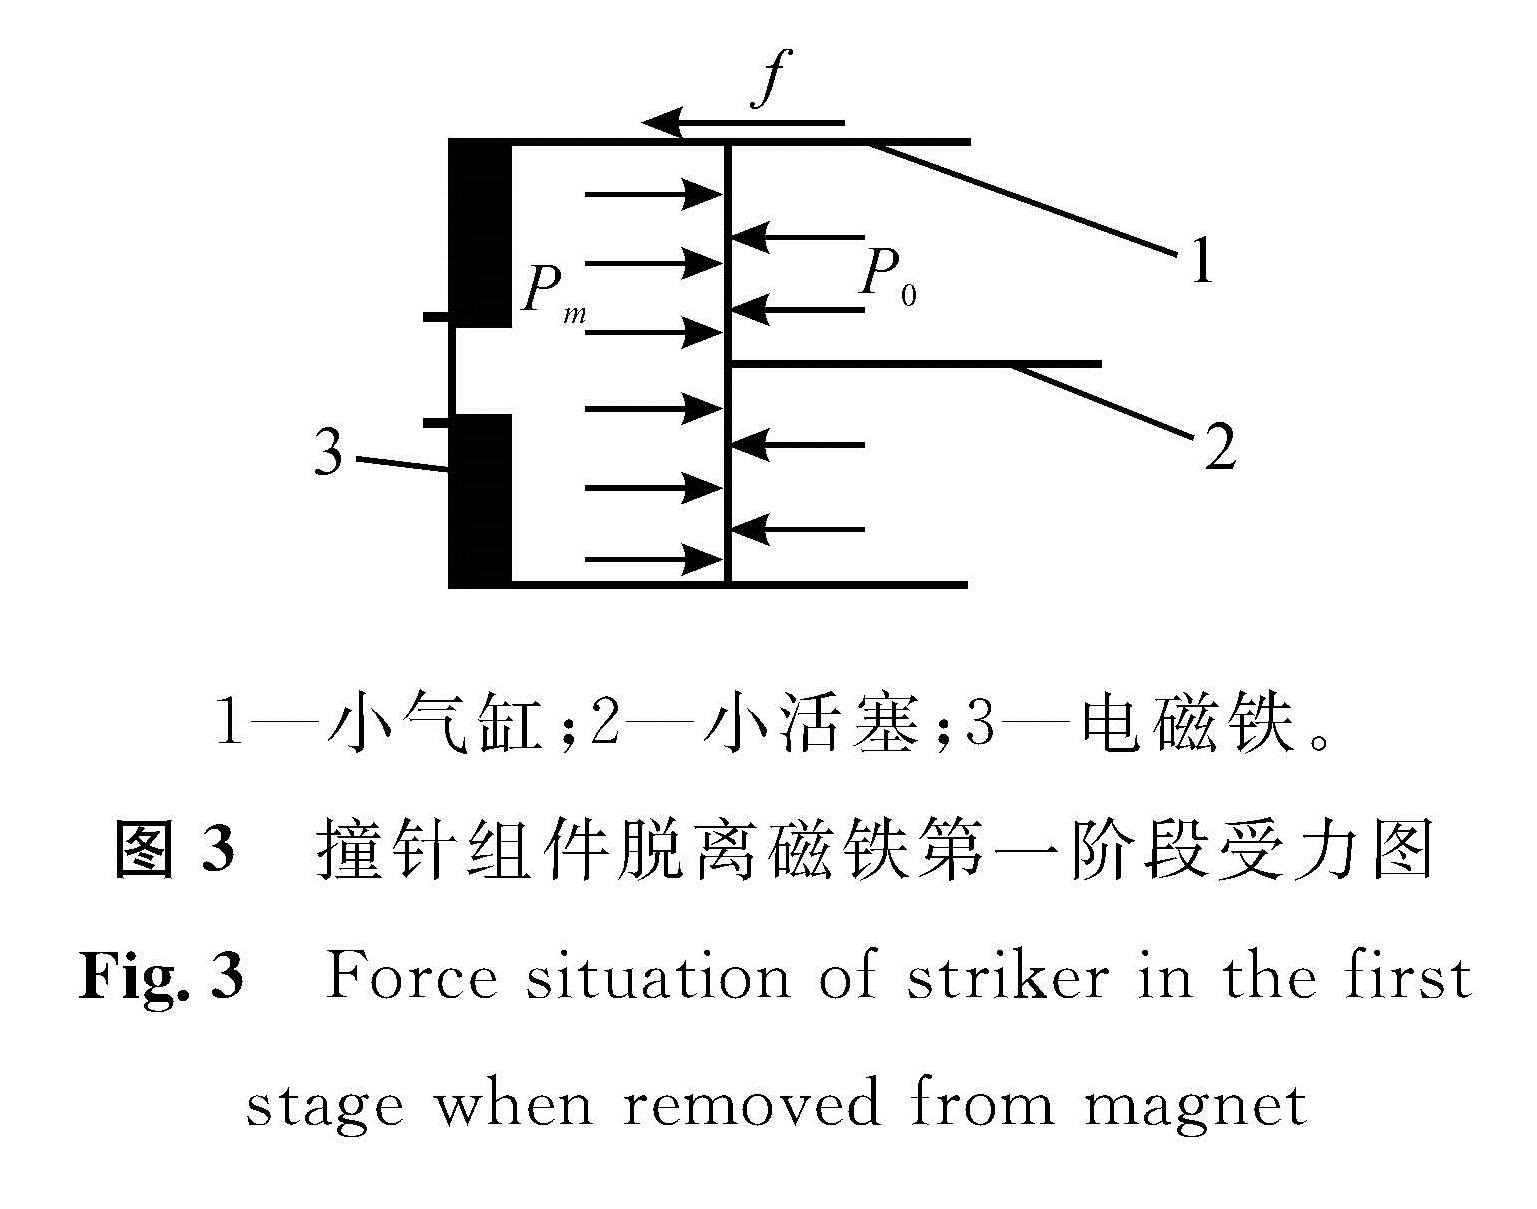 图3 撞针组件脱离磁铁第一阶段受力图<br/>Fig.3 Force situation of striker in the first stage when removed from magnet